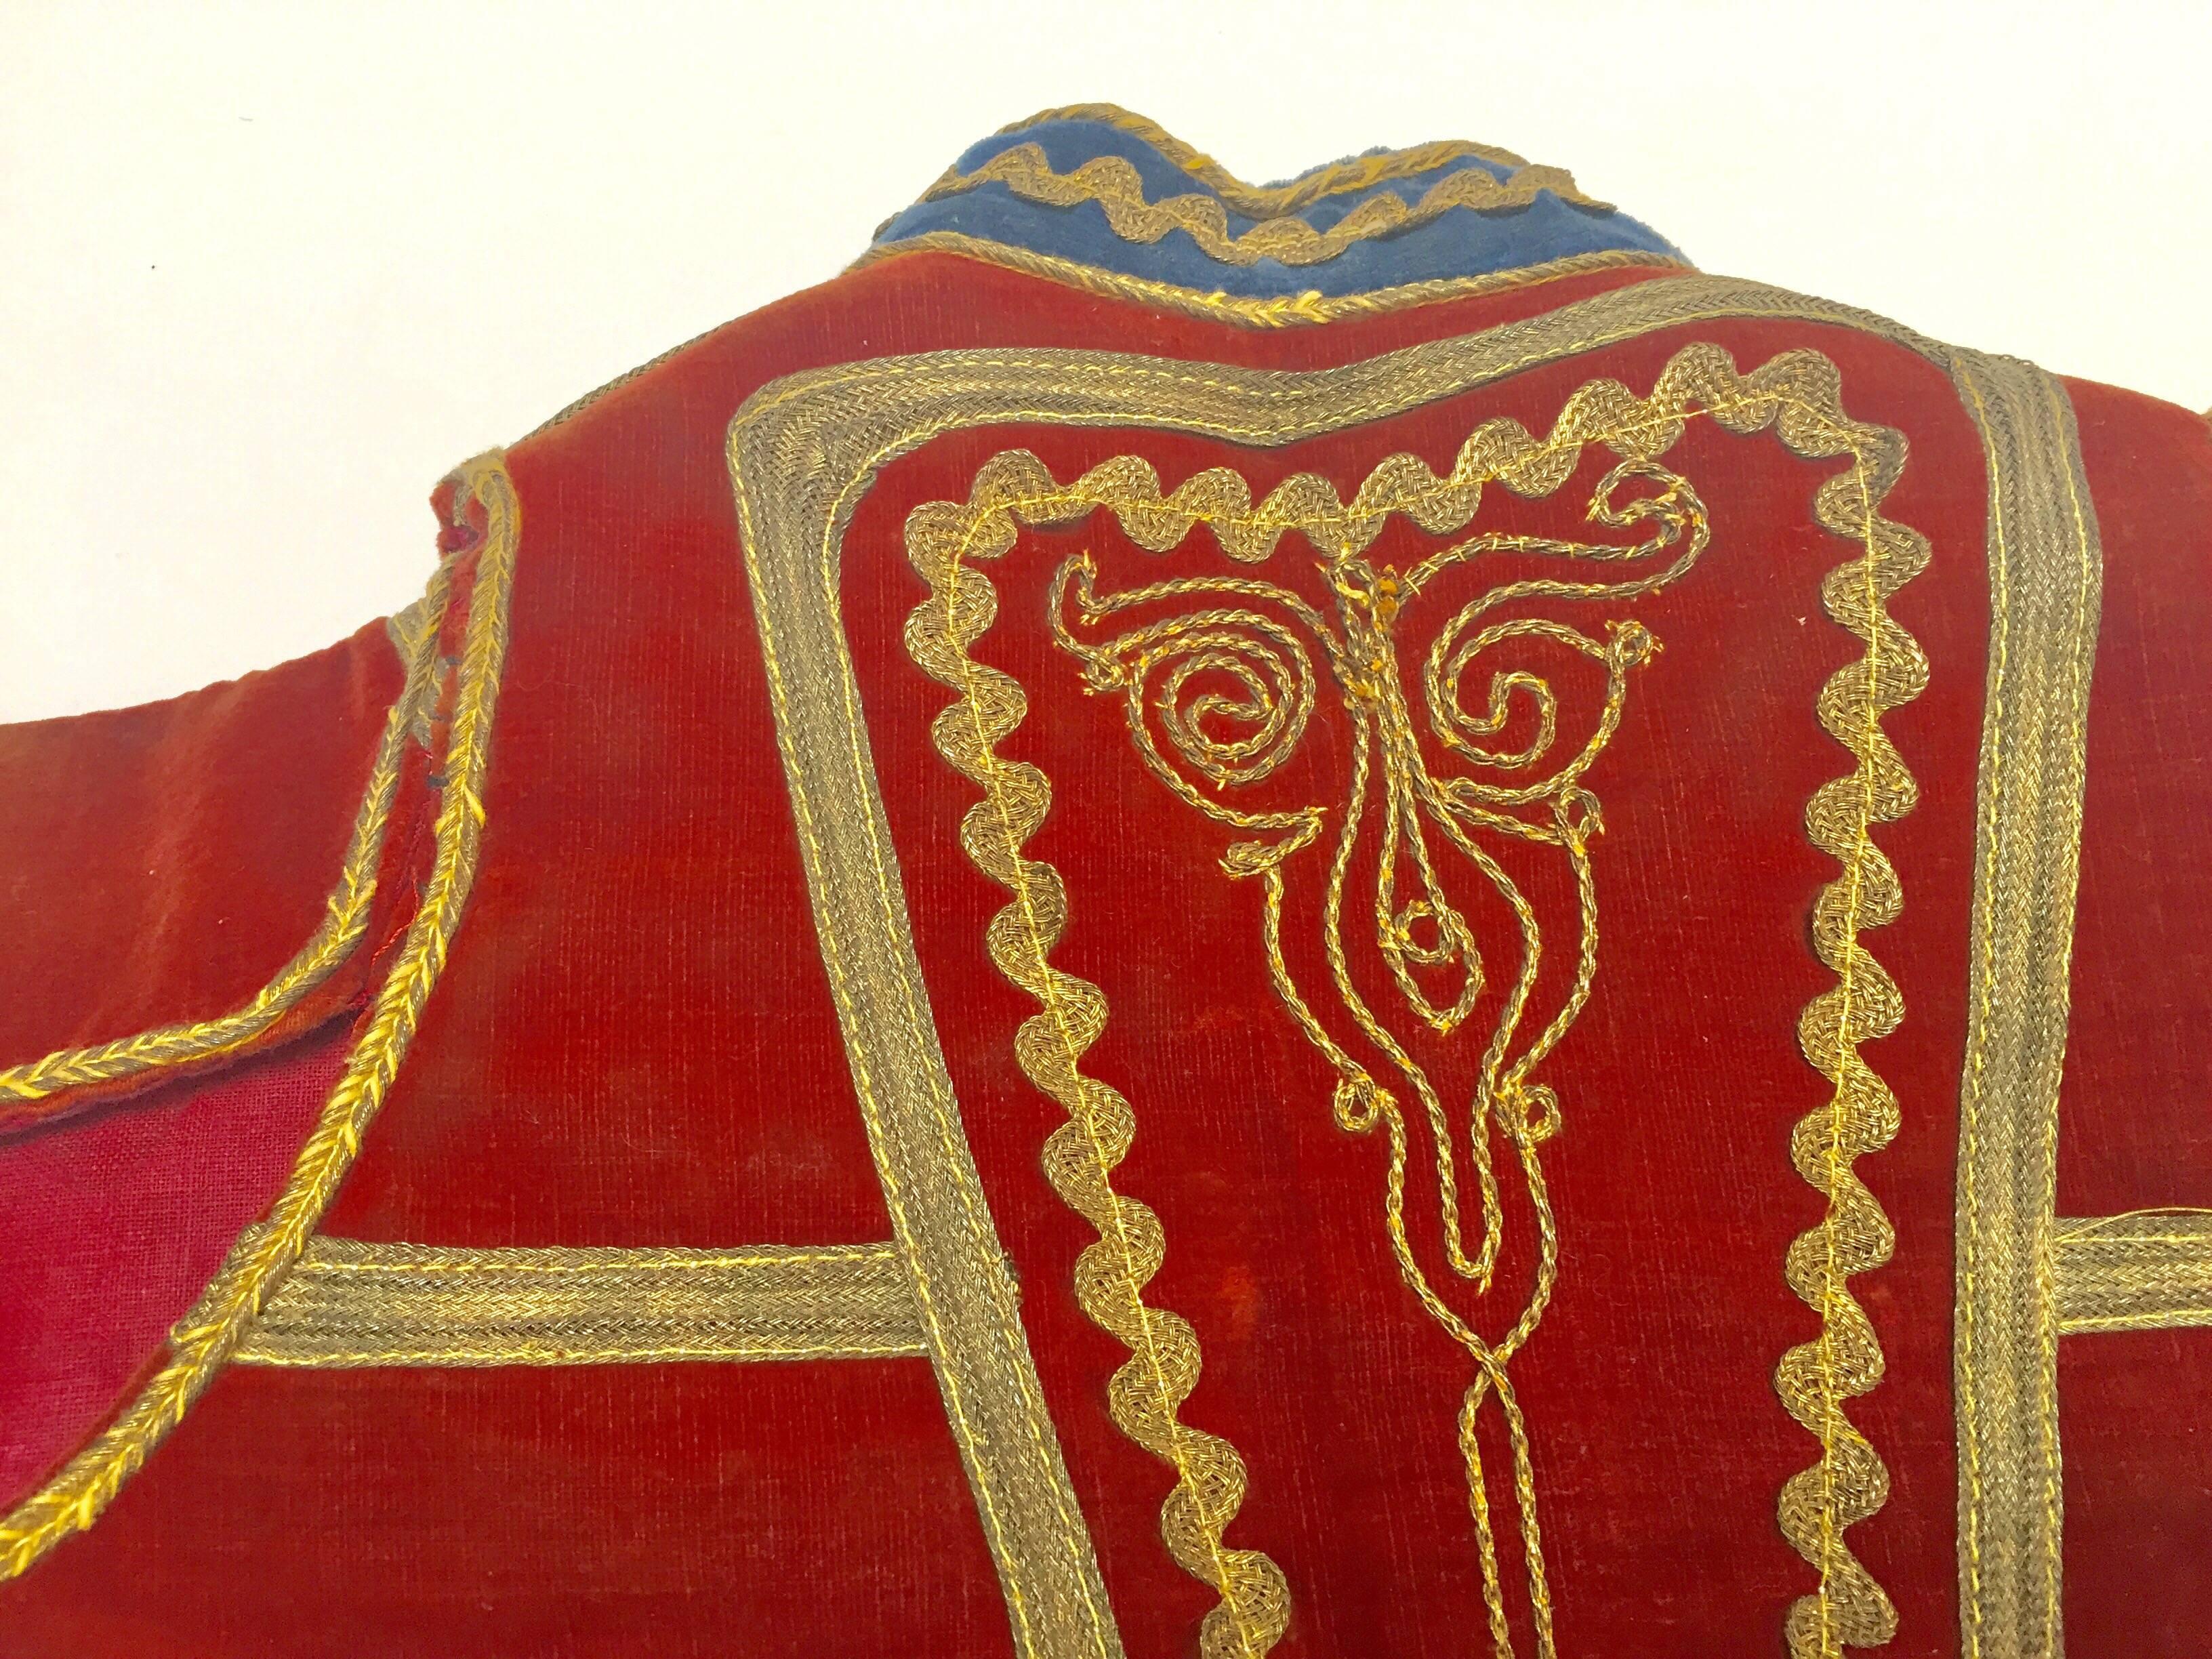 Antique Red Velvet Efe Zeybek Jacket Turkish Vest with Gold Embroidery For Sale 5